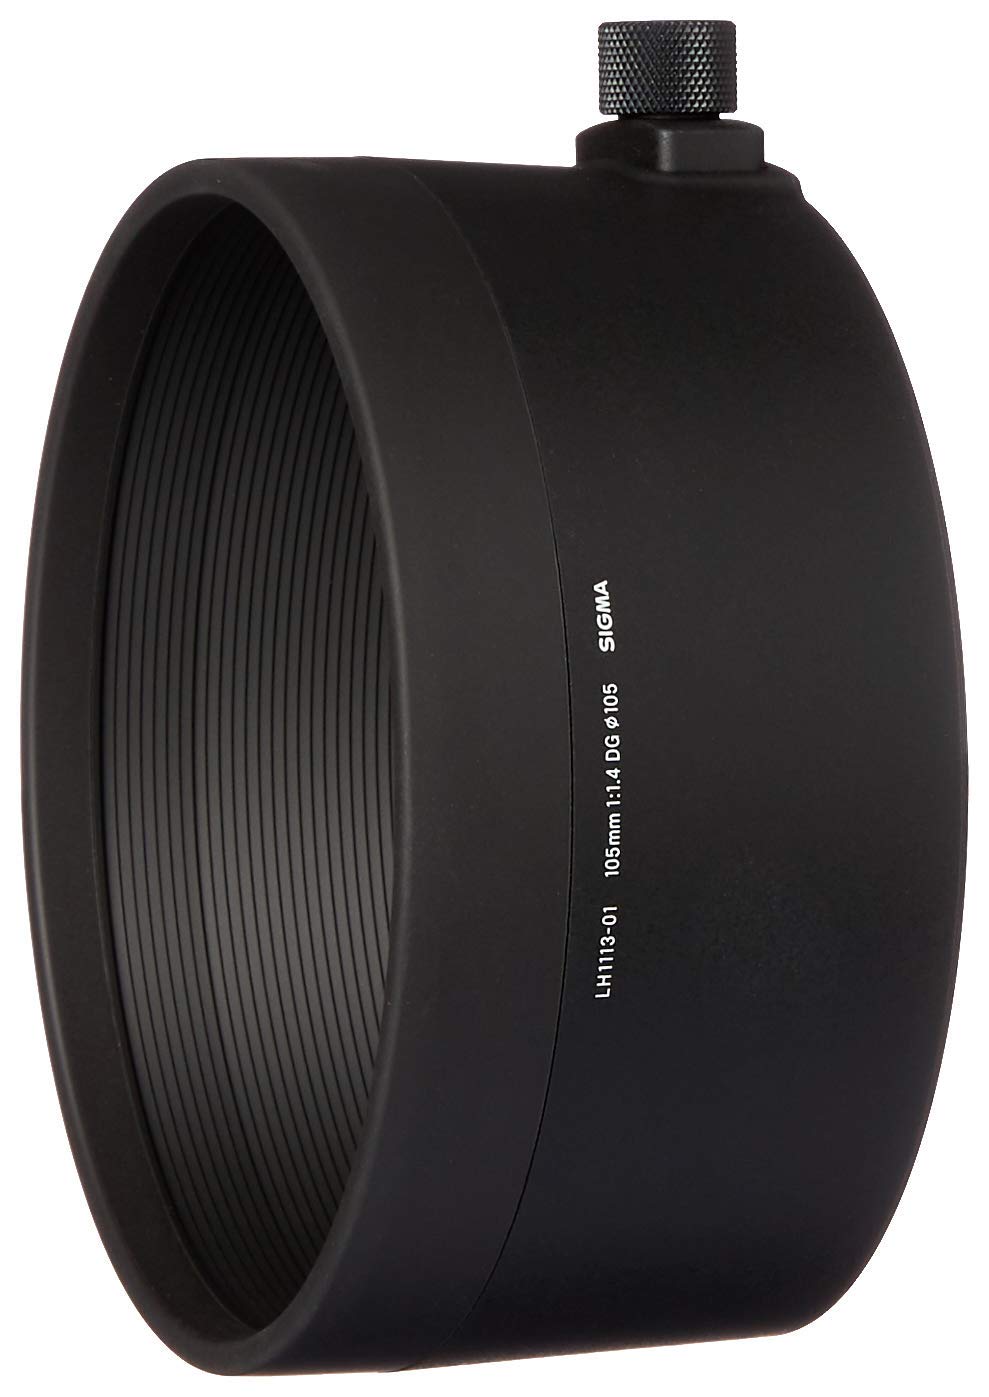 Sigma 105mm F1,4 DG HSM Art Objektiv (105mm Filtergewinde) für Sony-E Objektivbajonett